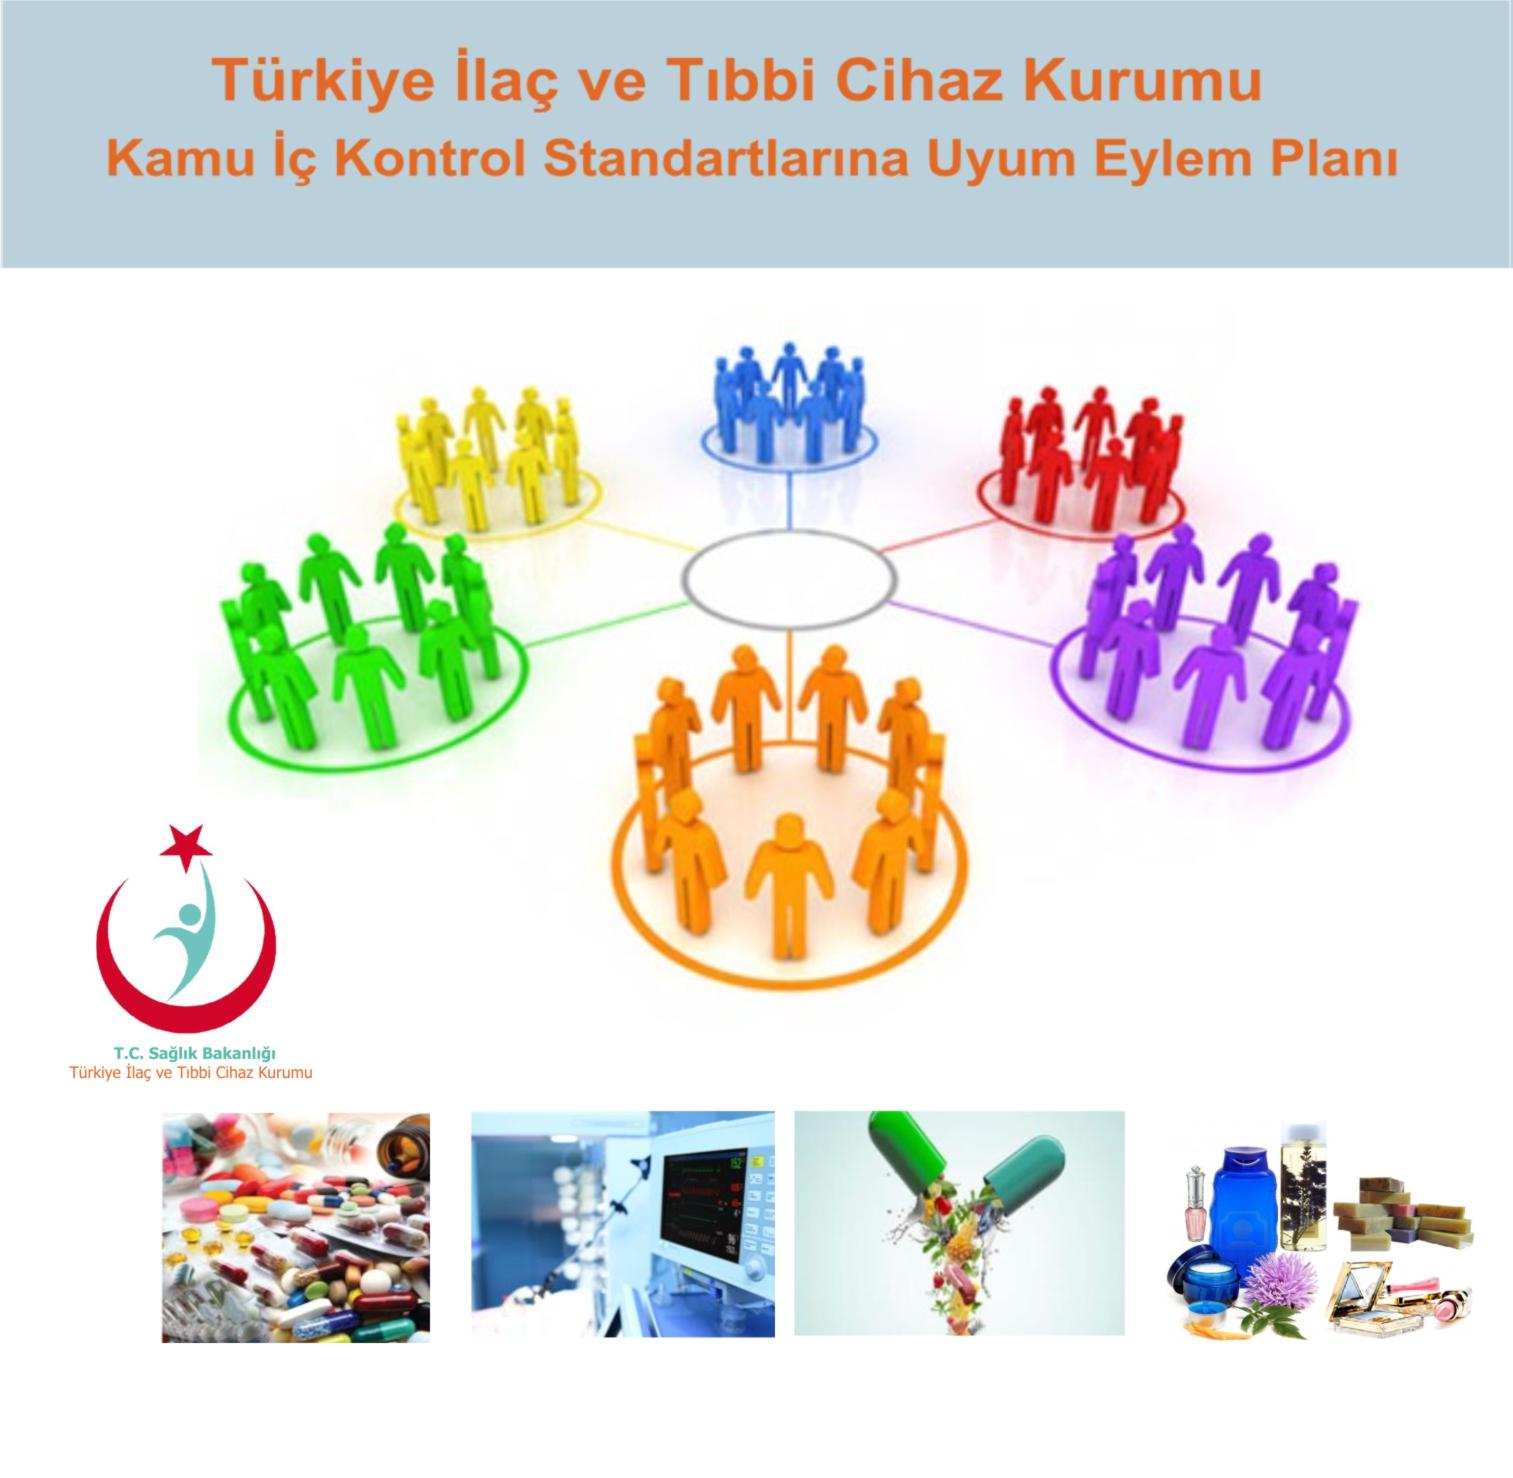 turkiye-ilac-ve-tibbi-cihaz-kurumu-ic-kontrol-eylem-plani-27122018173813